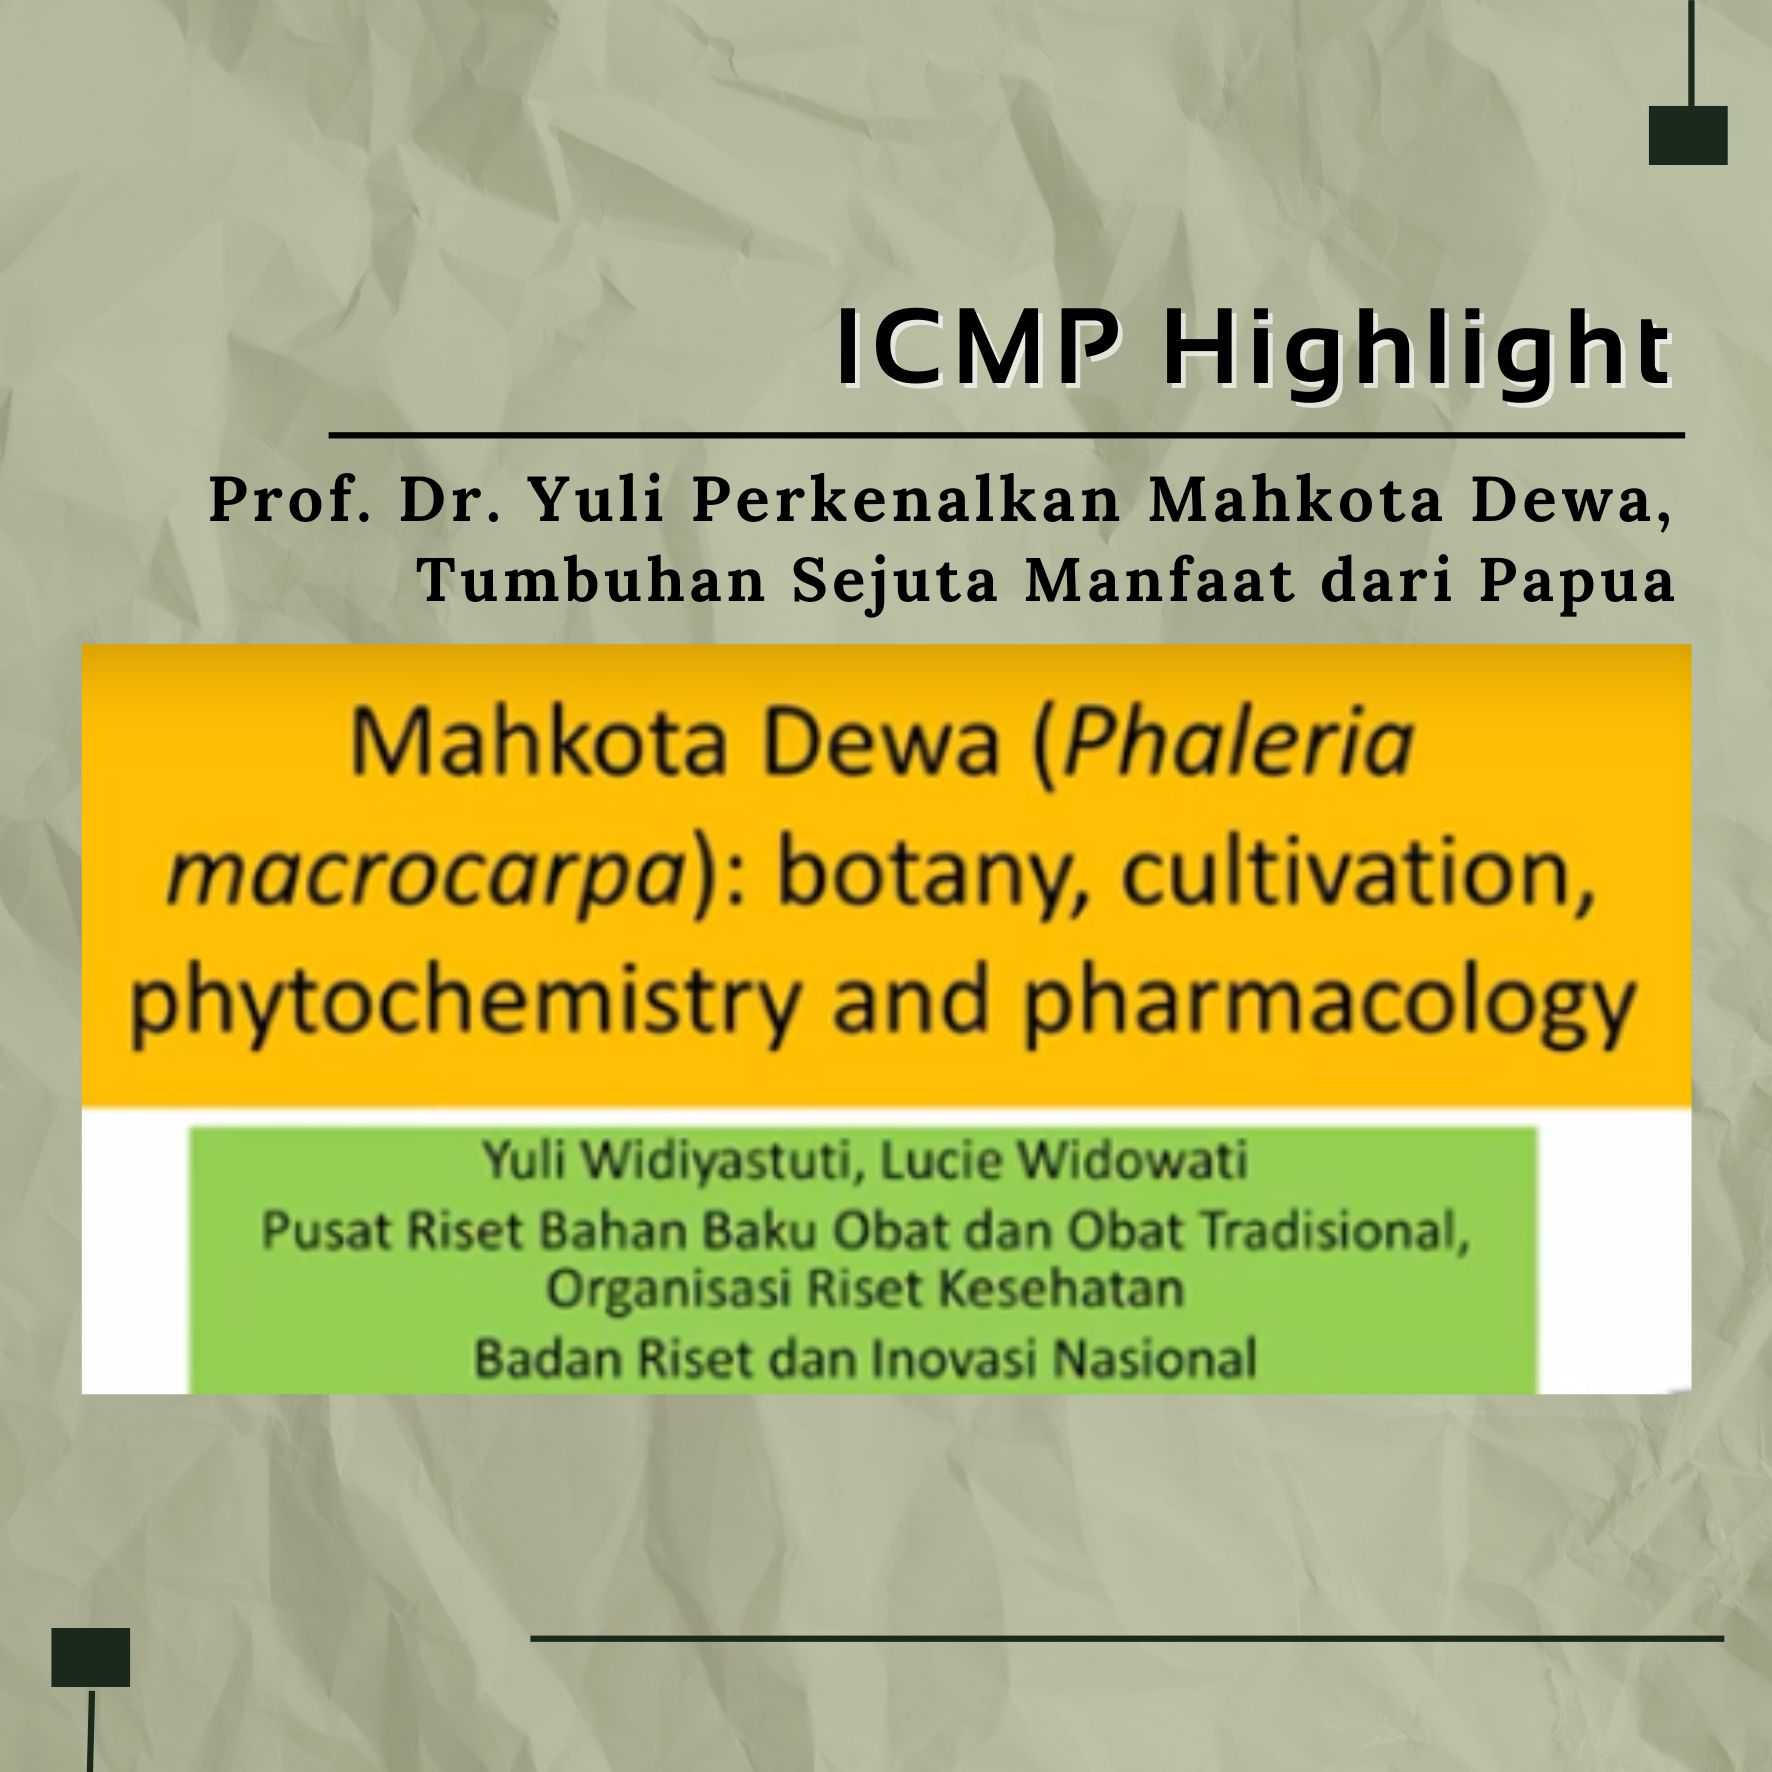 ICMP Highlight: Prof. Dr. Yuli Perkenalkan Mahkota Dewa, Tumbuhan Sejuta Manfaat dari Papua